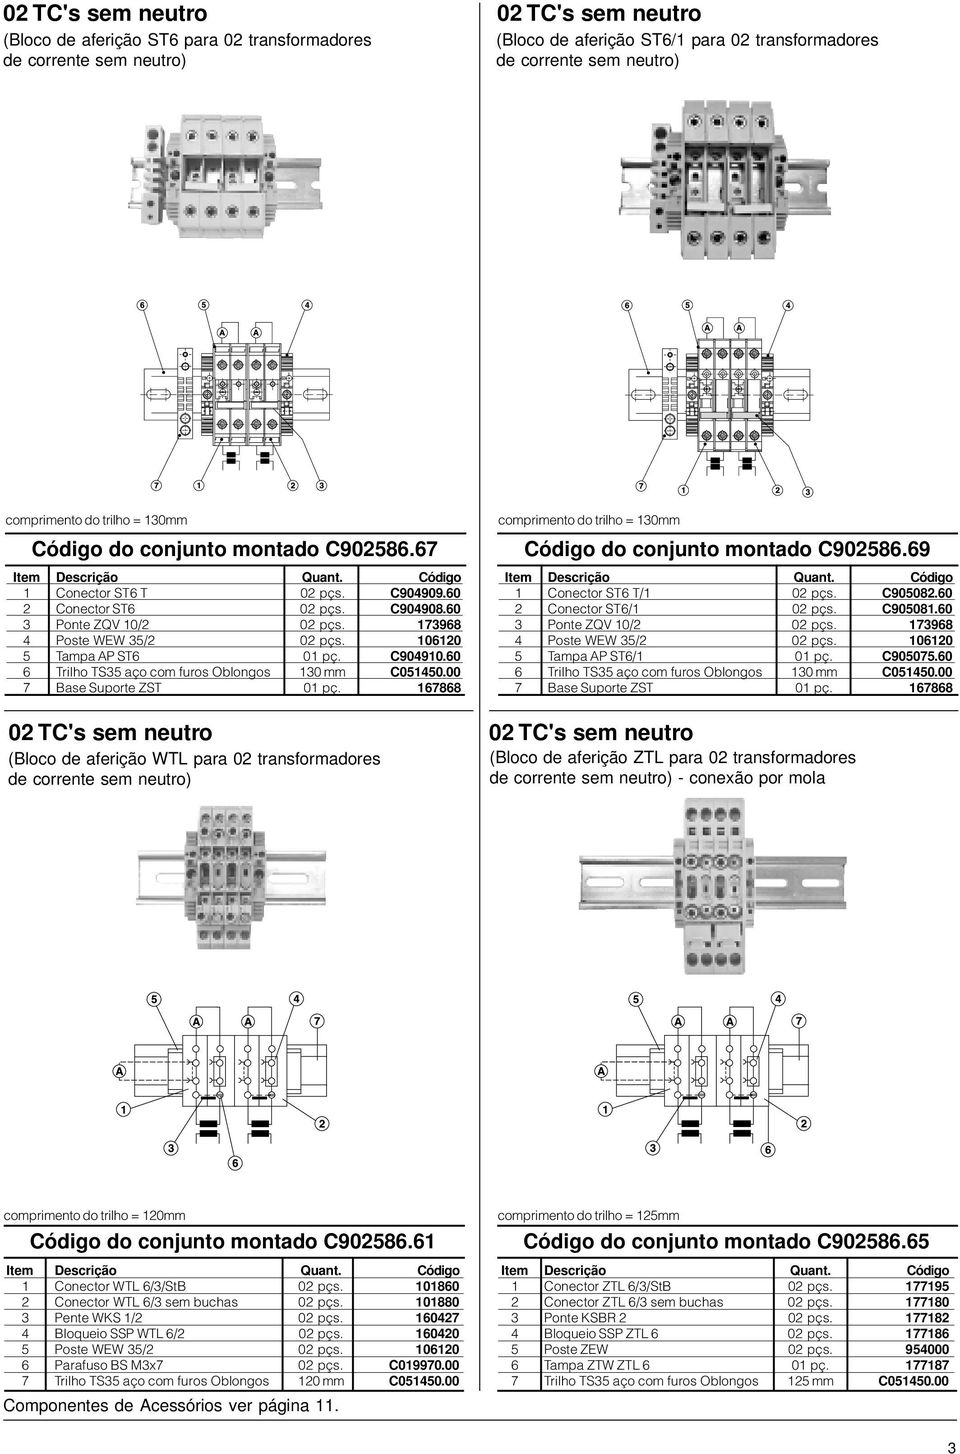 00 02 TC's sem neutro (Bloco de aferição WTL para 02 transformadores comprimento do trilho = 130mm do conjunto montado C902586.69 1 Conector ST6 T/1 02 pçs. C905082.60 2 Conector ST6/1 02 pçs.